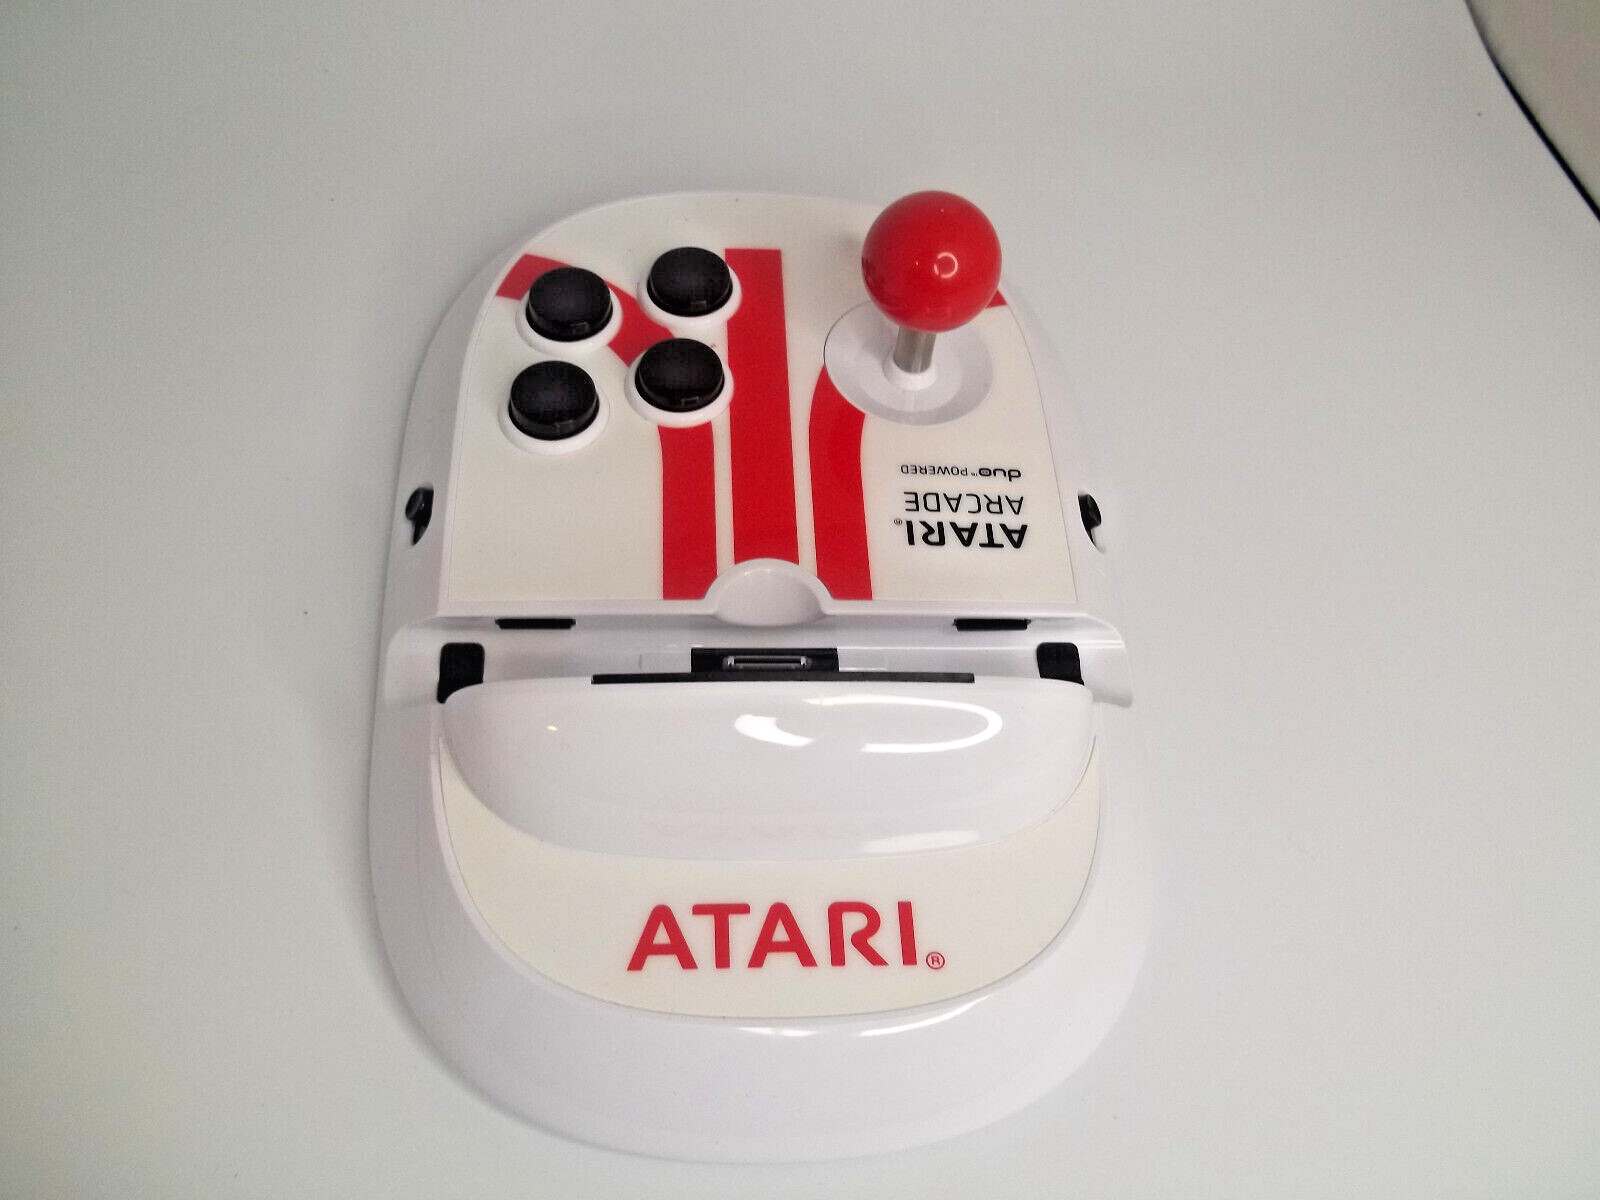 Atari Arcade Duo Powered For Ipad Joystick Games Video Play Controller